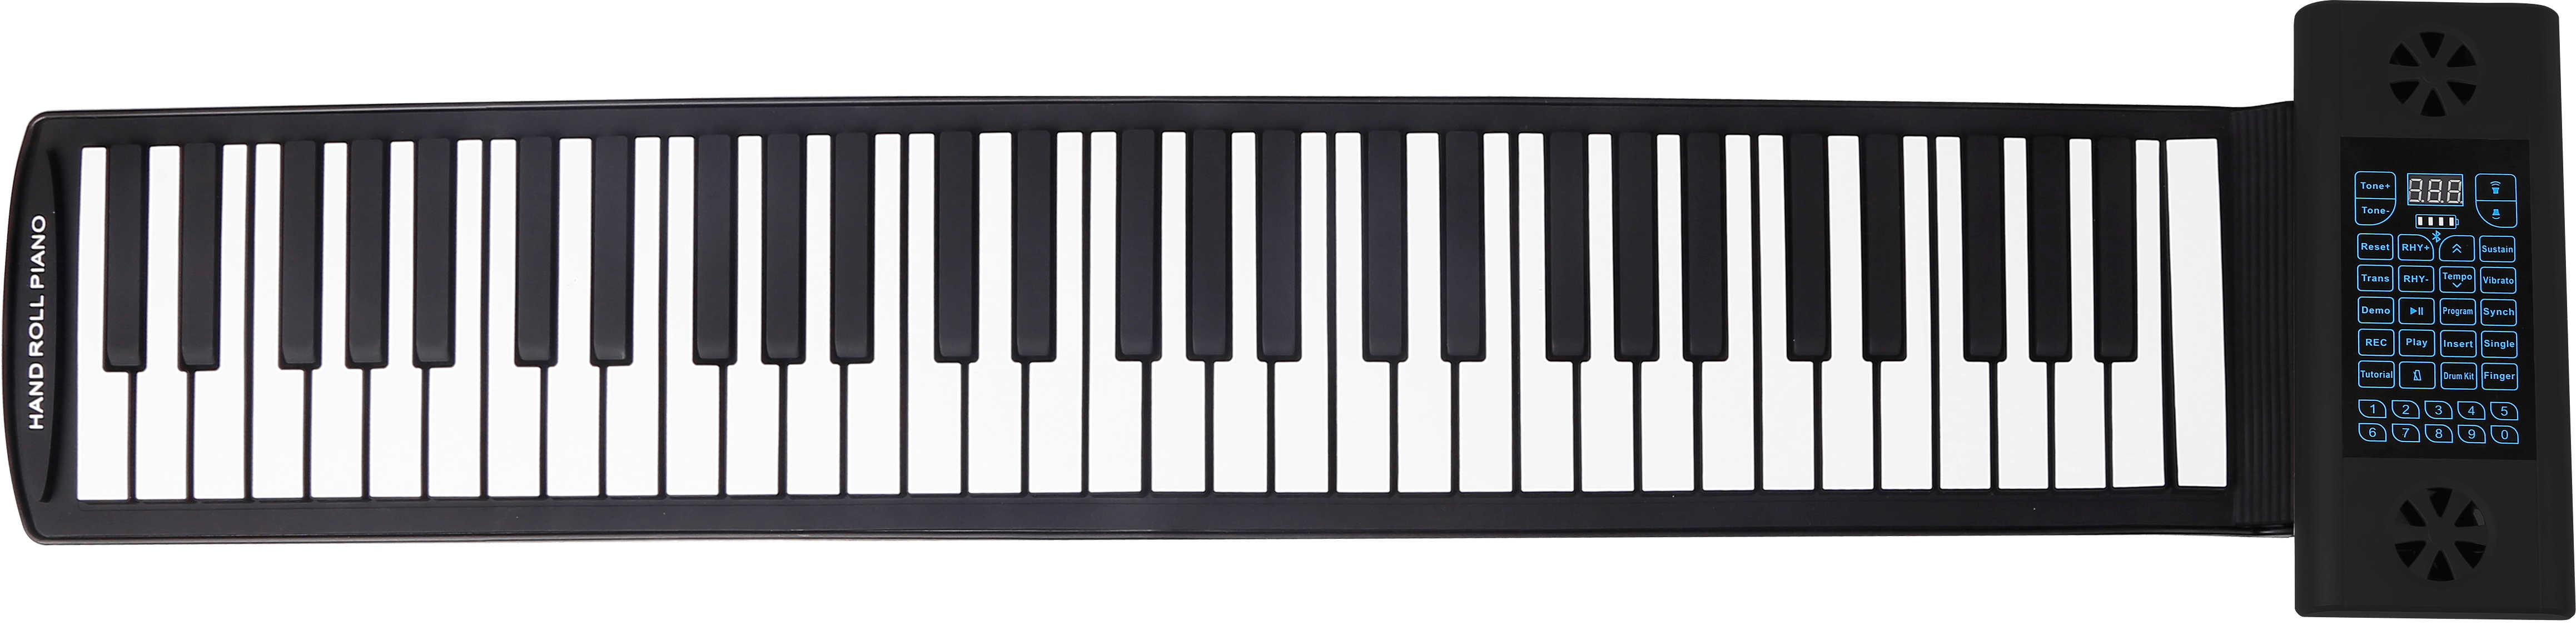 đàn piano silicon với 61 phím